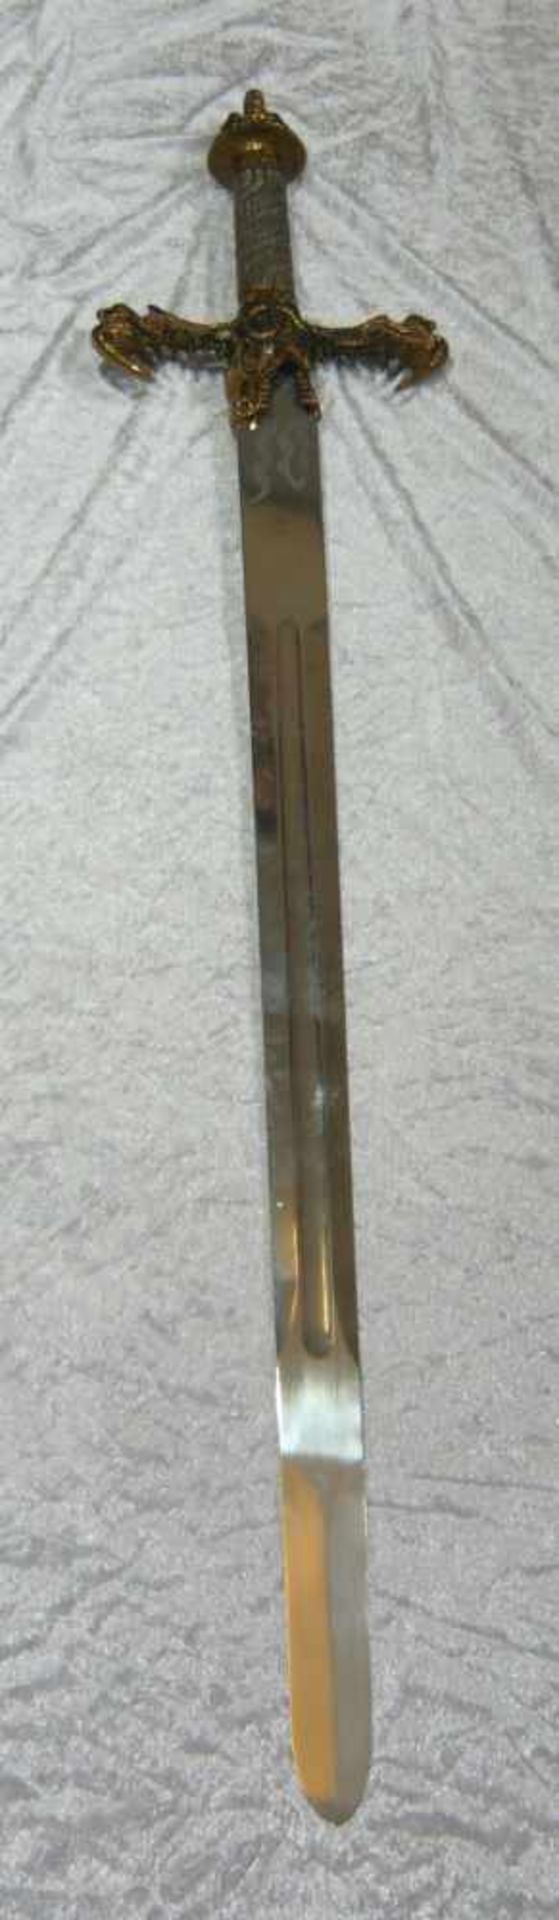 Übergroßes und beeindruckendes Fantasy-Schwert. L. ca. 125 cm.Oversized and breathtaking fantasy-